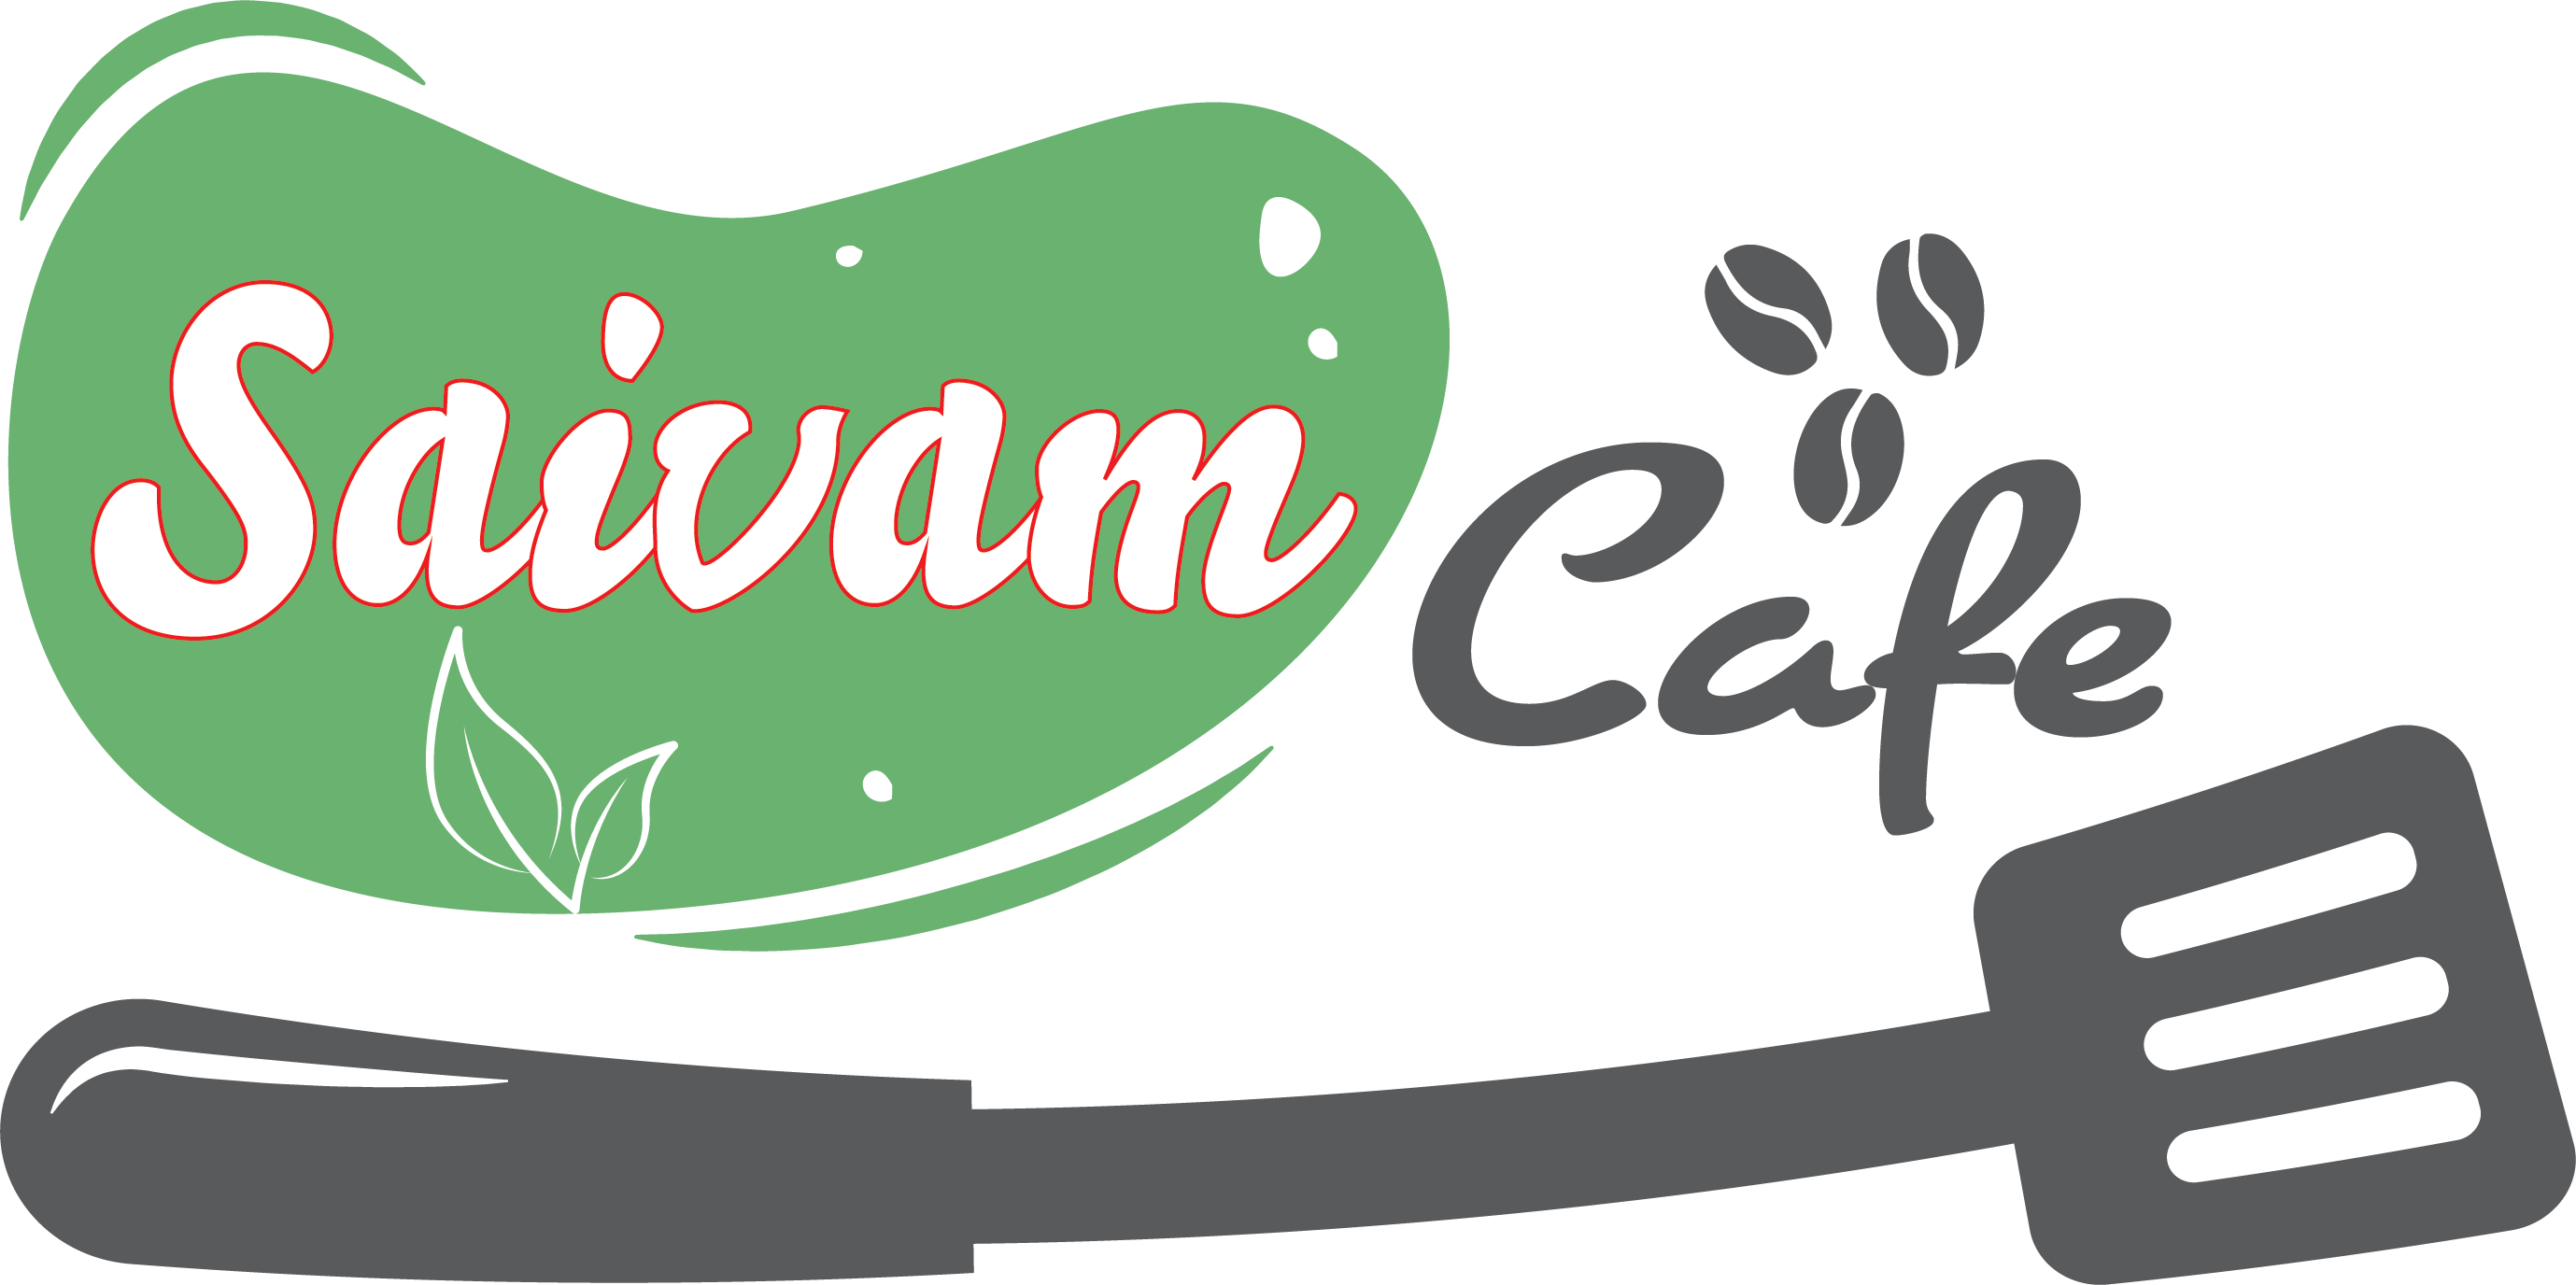 Saivam Cafe